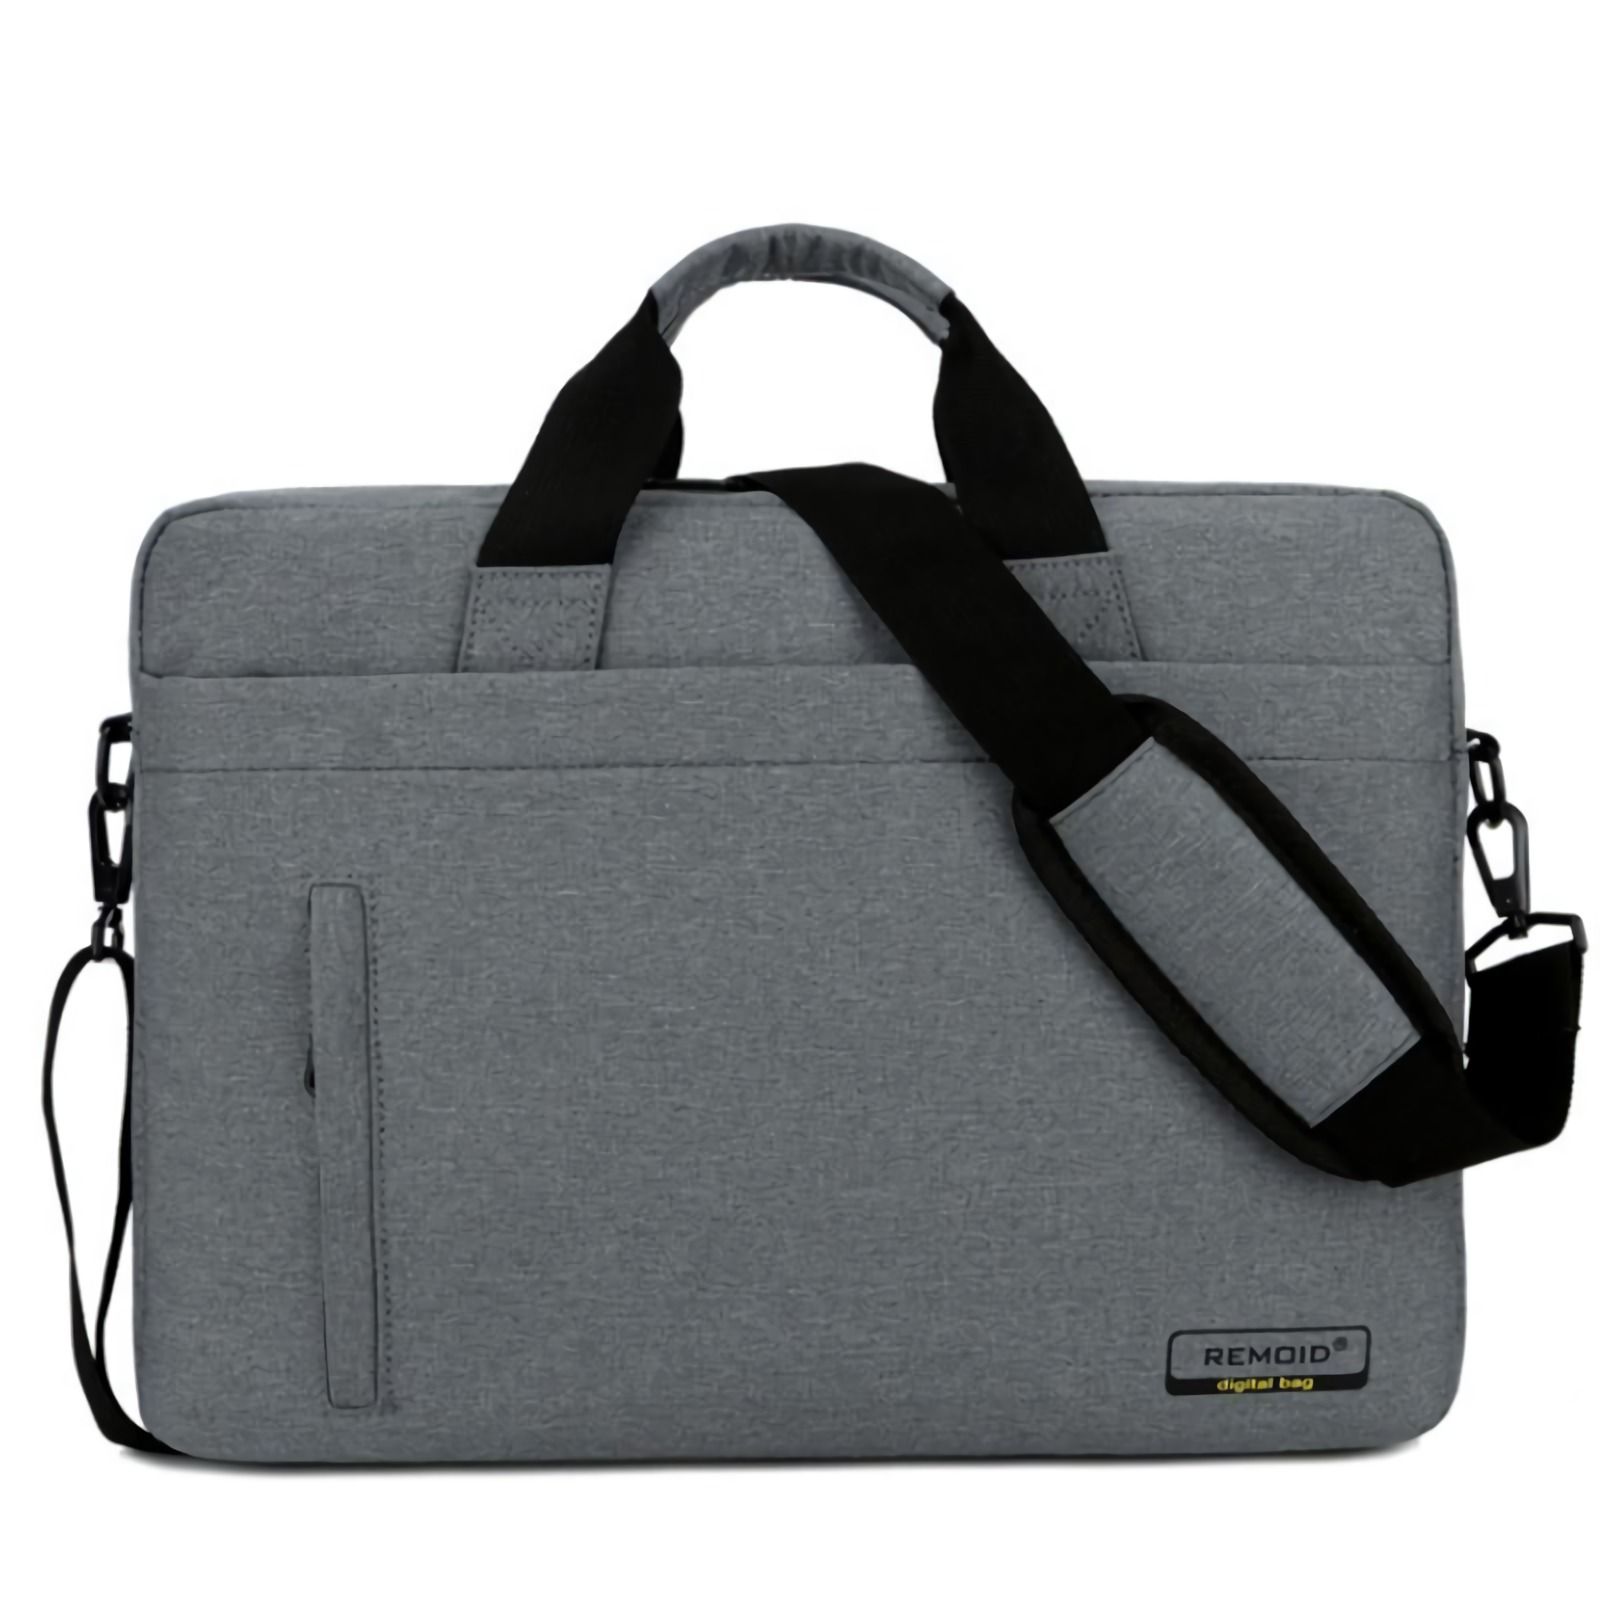 Unisex-Laptop-Bag-Sleeve-Messenger-Shoulder-Bag-for-14-Inch-Notebook--MacBook-1633720